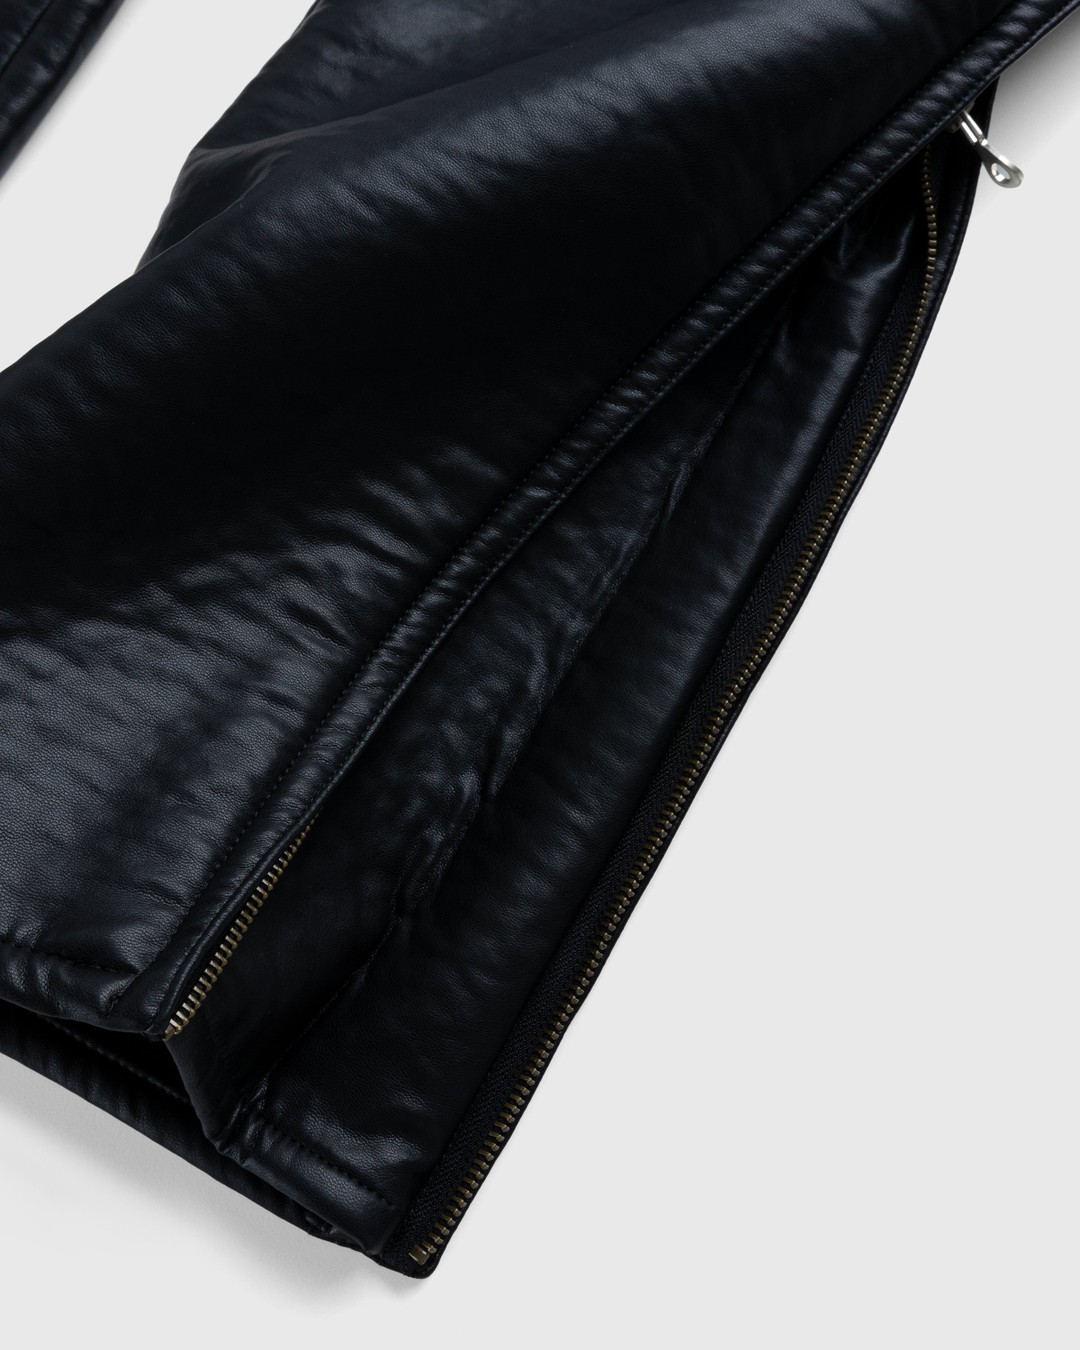 Diesel – Cirio Biker Trousers Black - Trousers - Black - Image 3